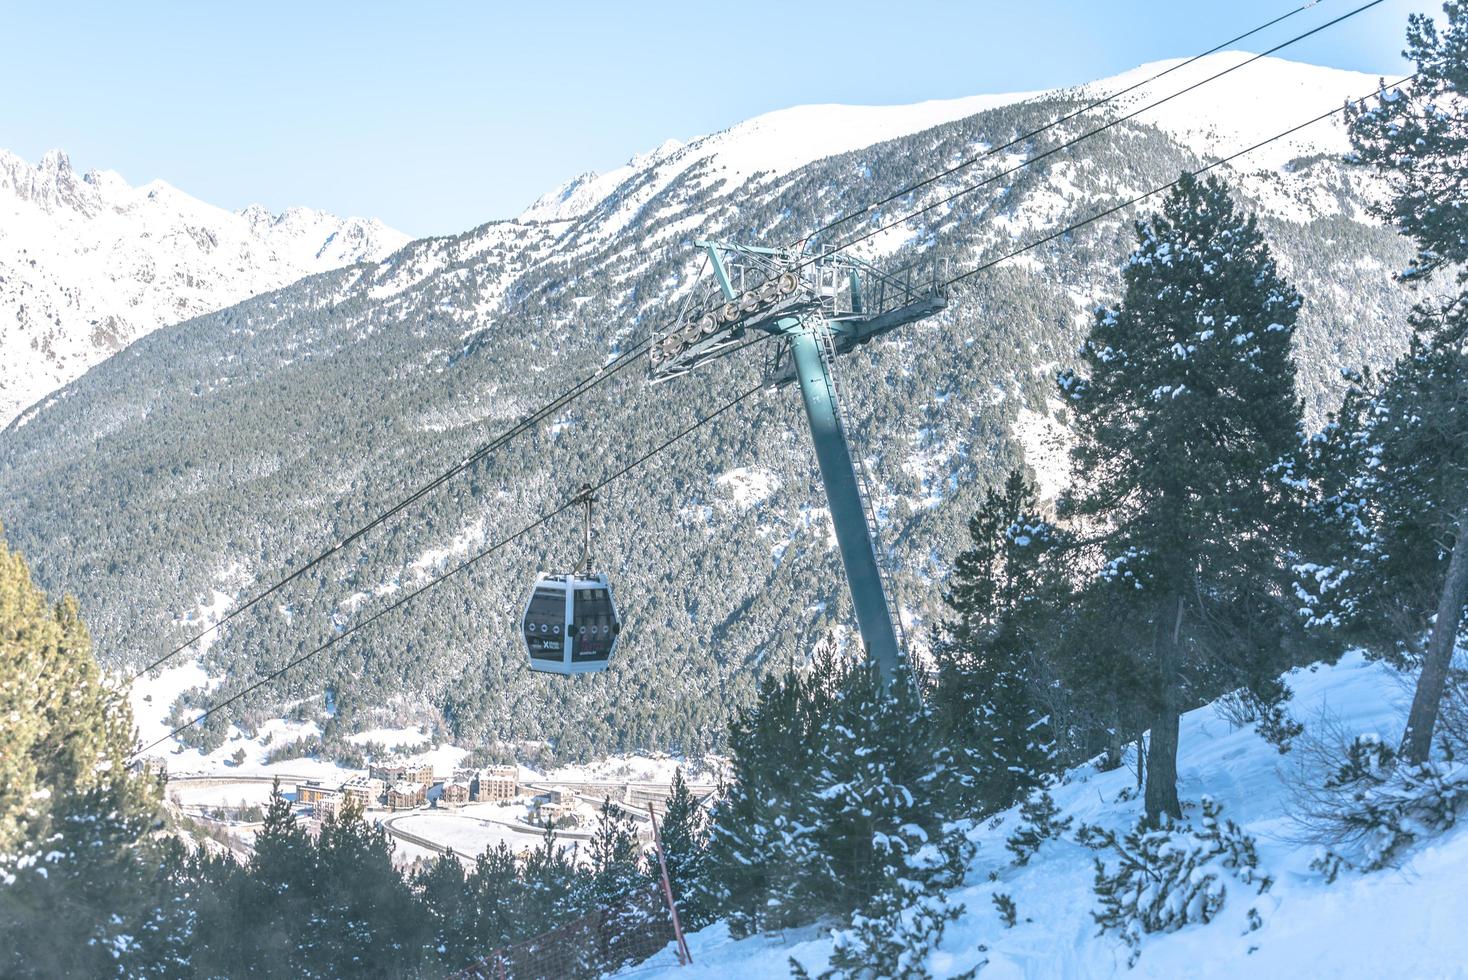 grandvalira, andorra, 2021 - gondellift bij skistation in el tarter foto